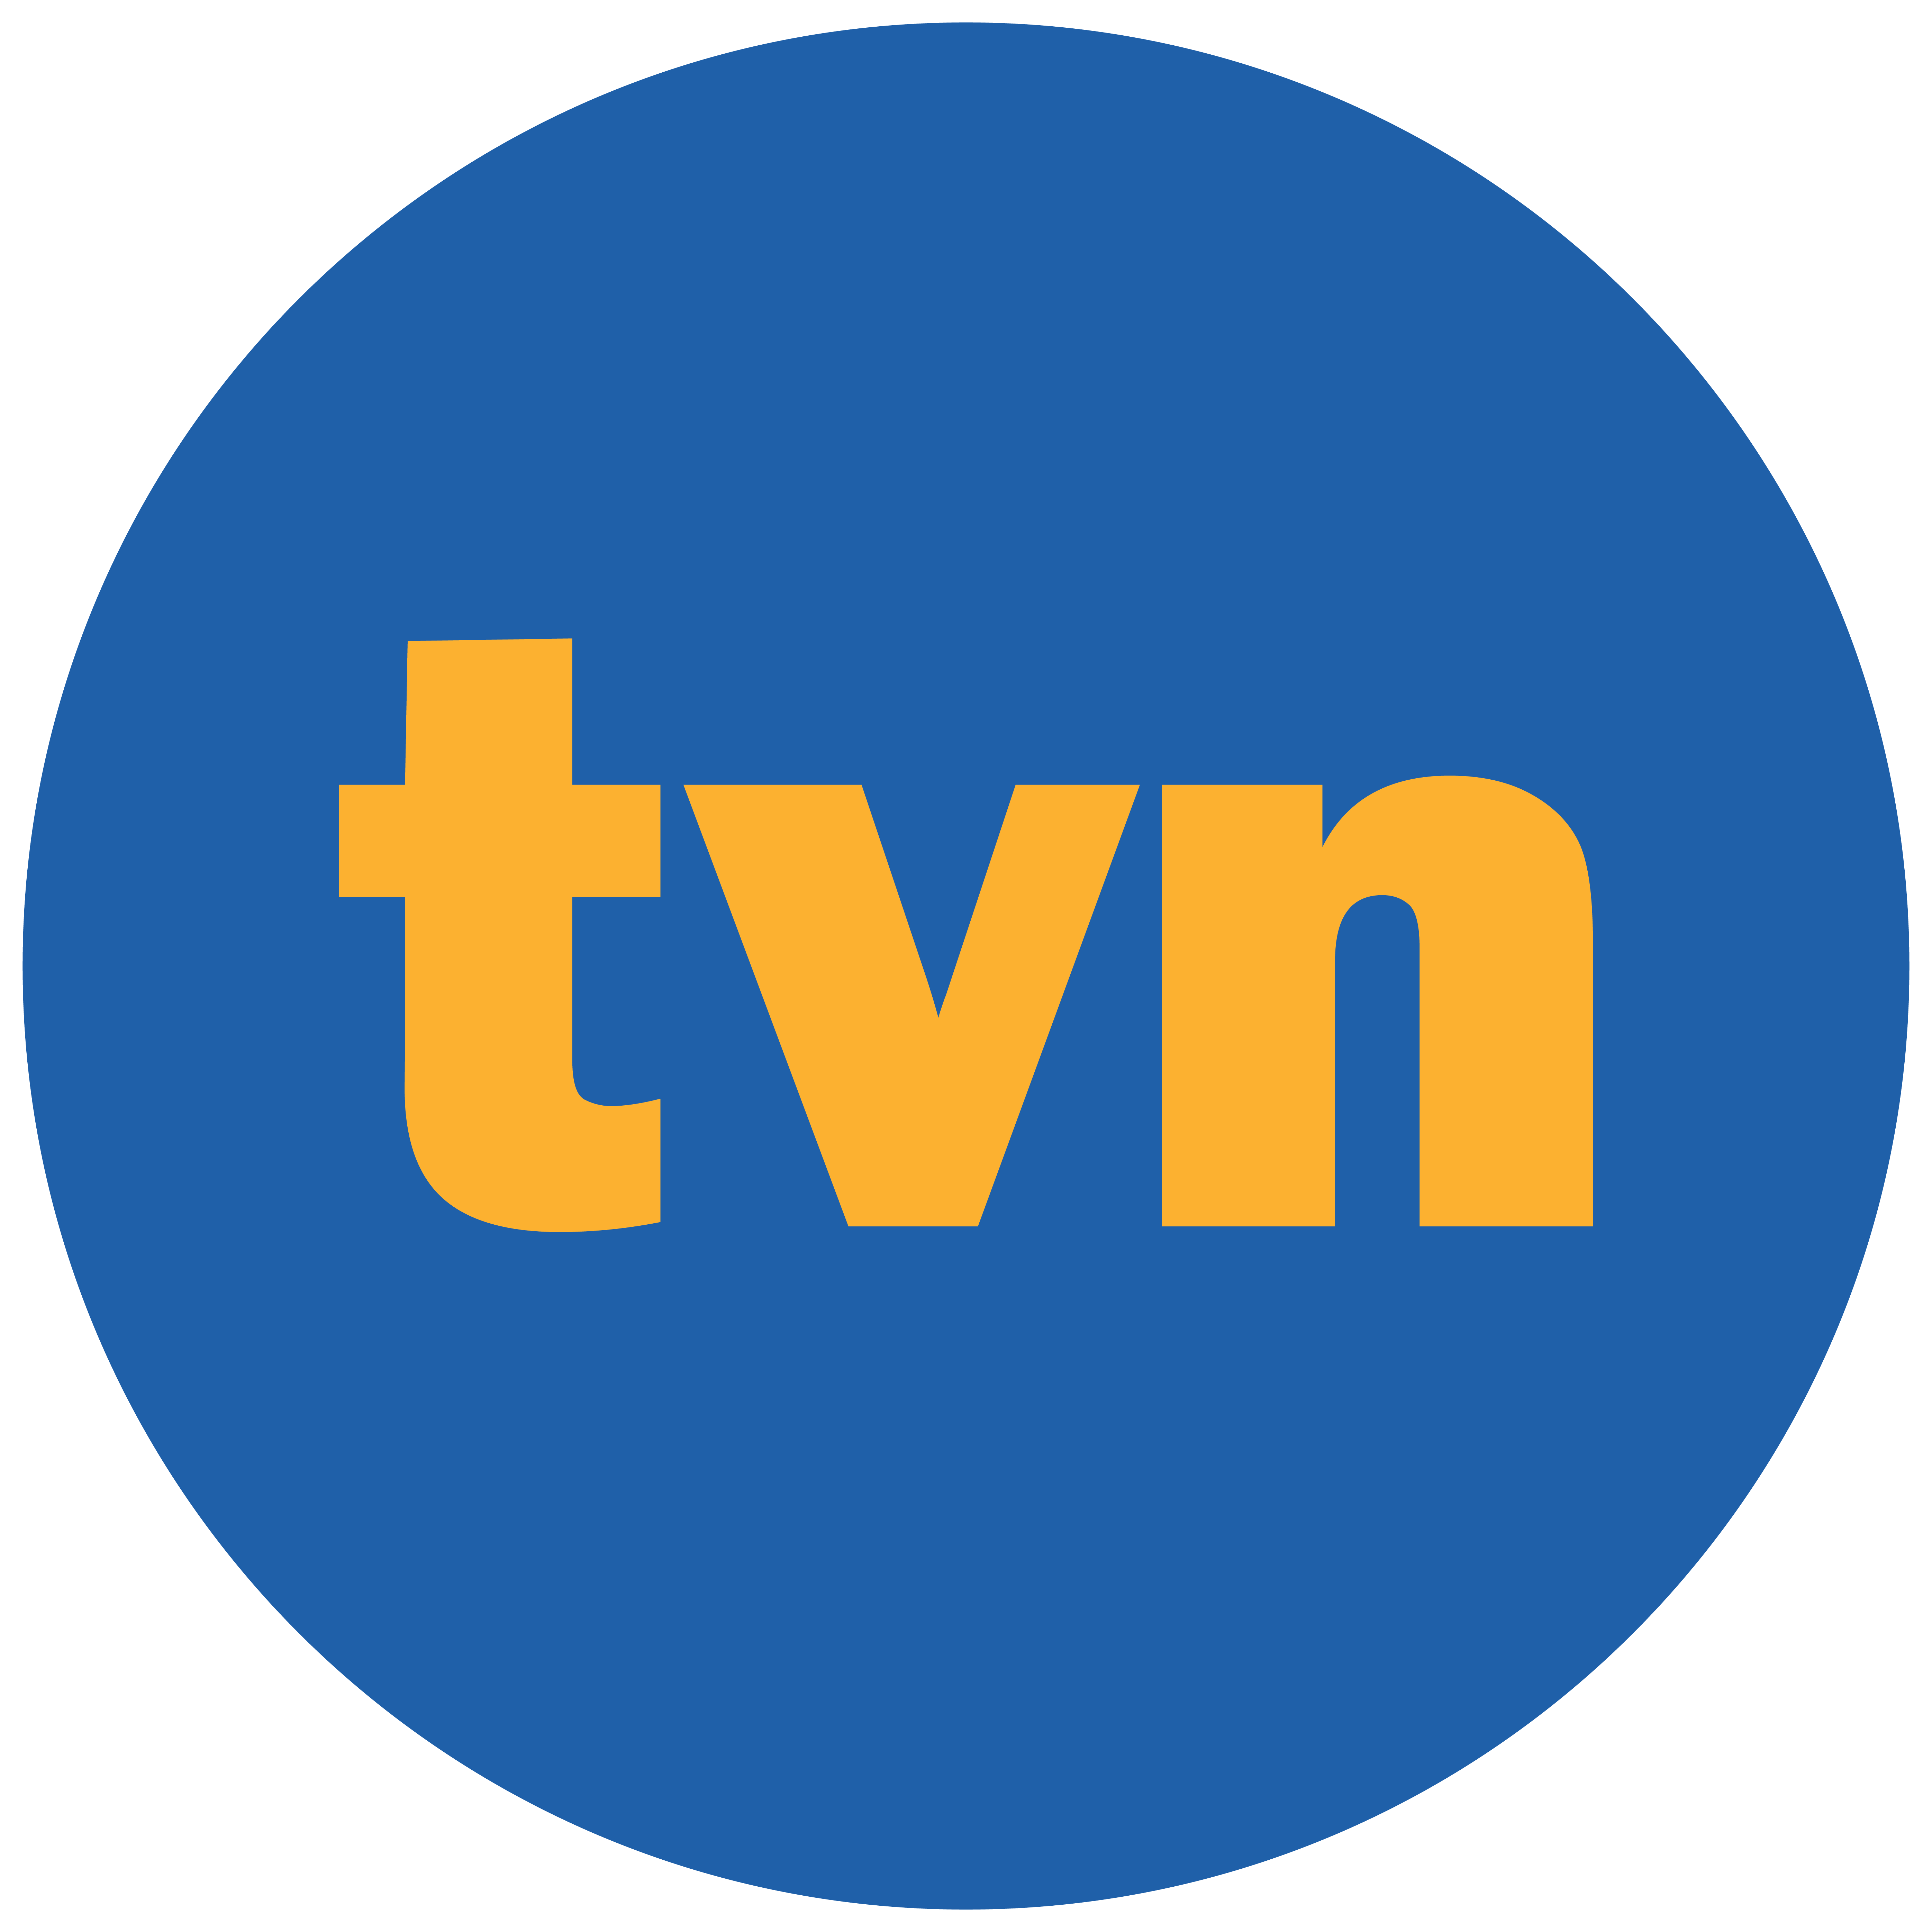 tvn logo